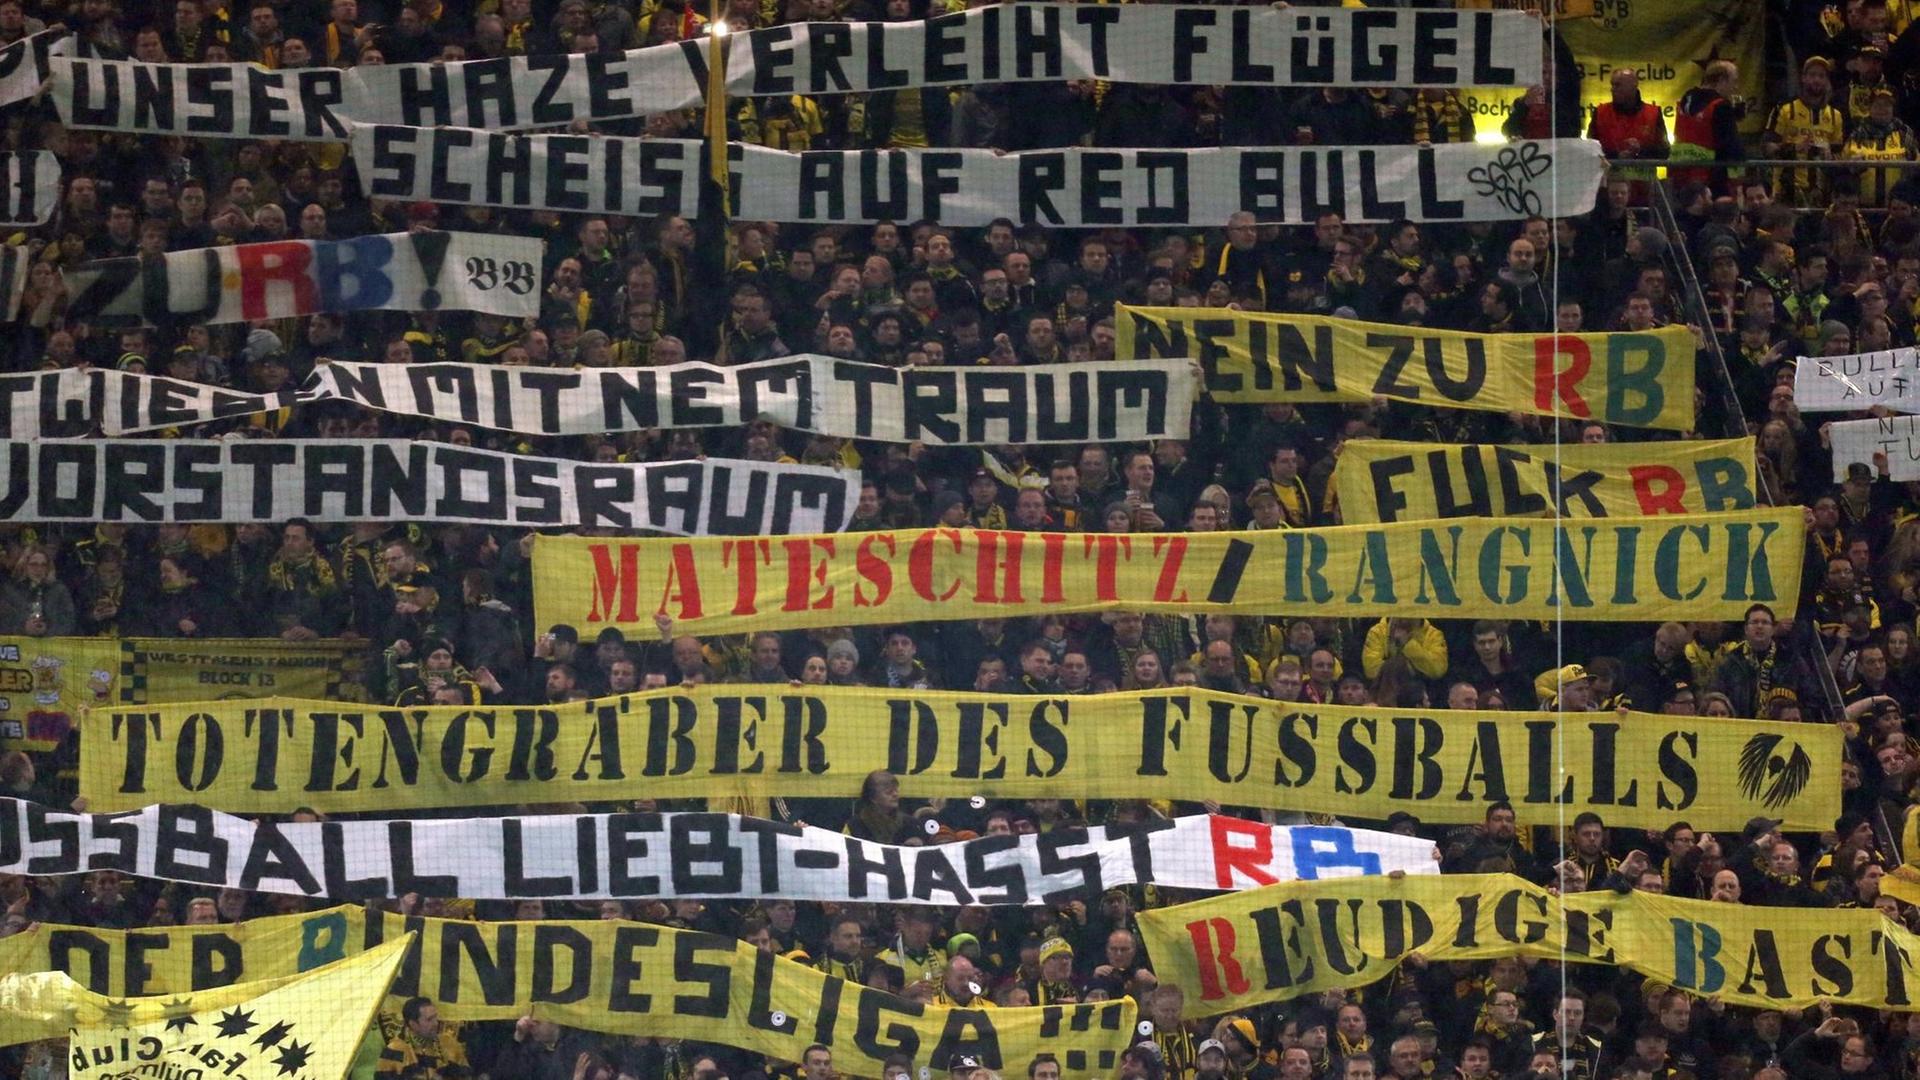 Dortmunder Fans halten Tarnsparente hoch mit Aufschriften wie "Totengräber des Fußballs" und "Scheiss auf Red Bull".